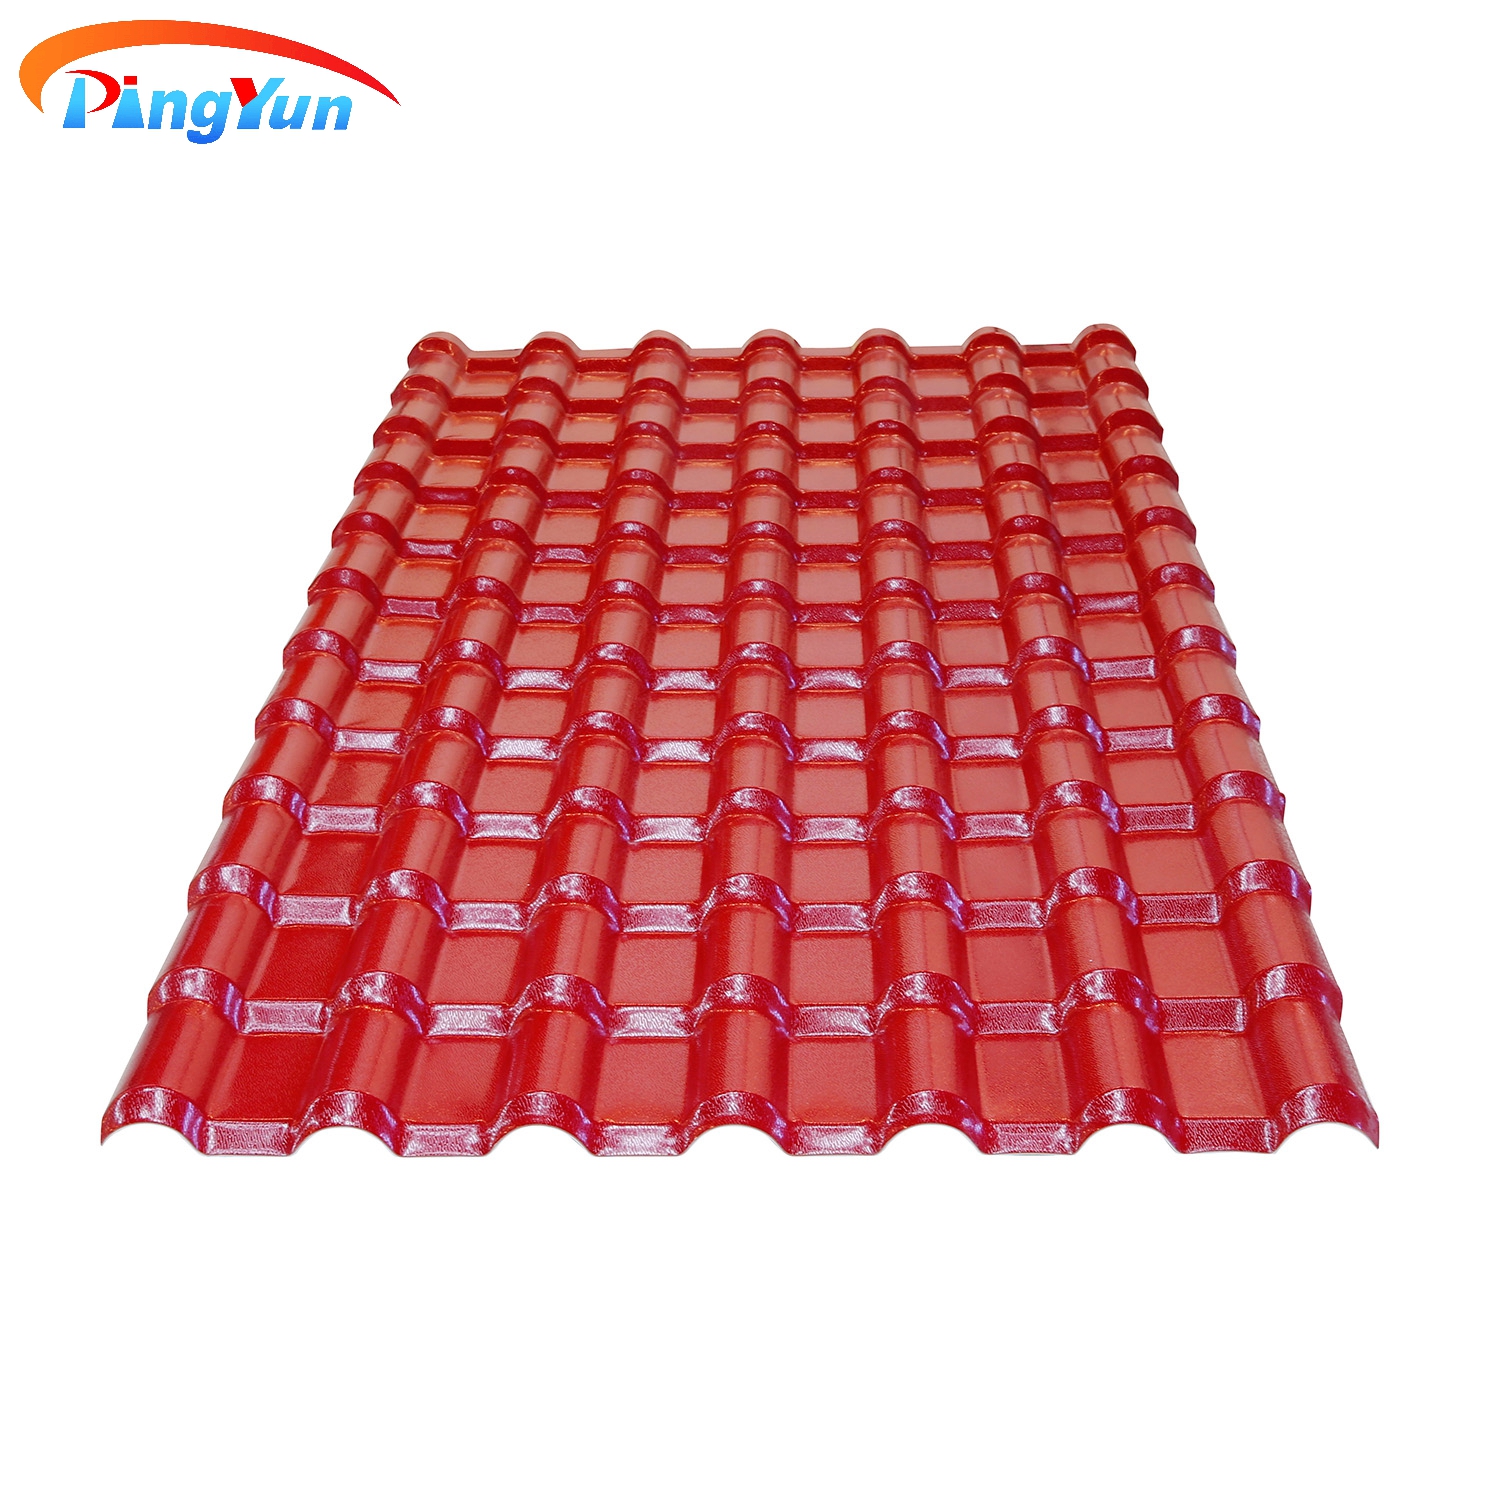 Pingyun Pavillion Brick Red Plastic PVC Roof Tile